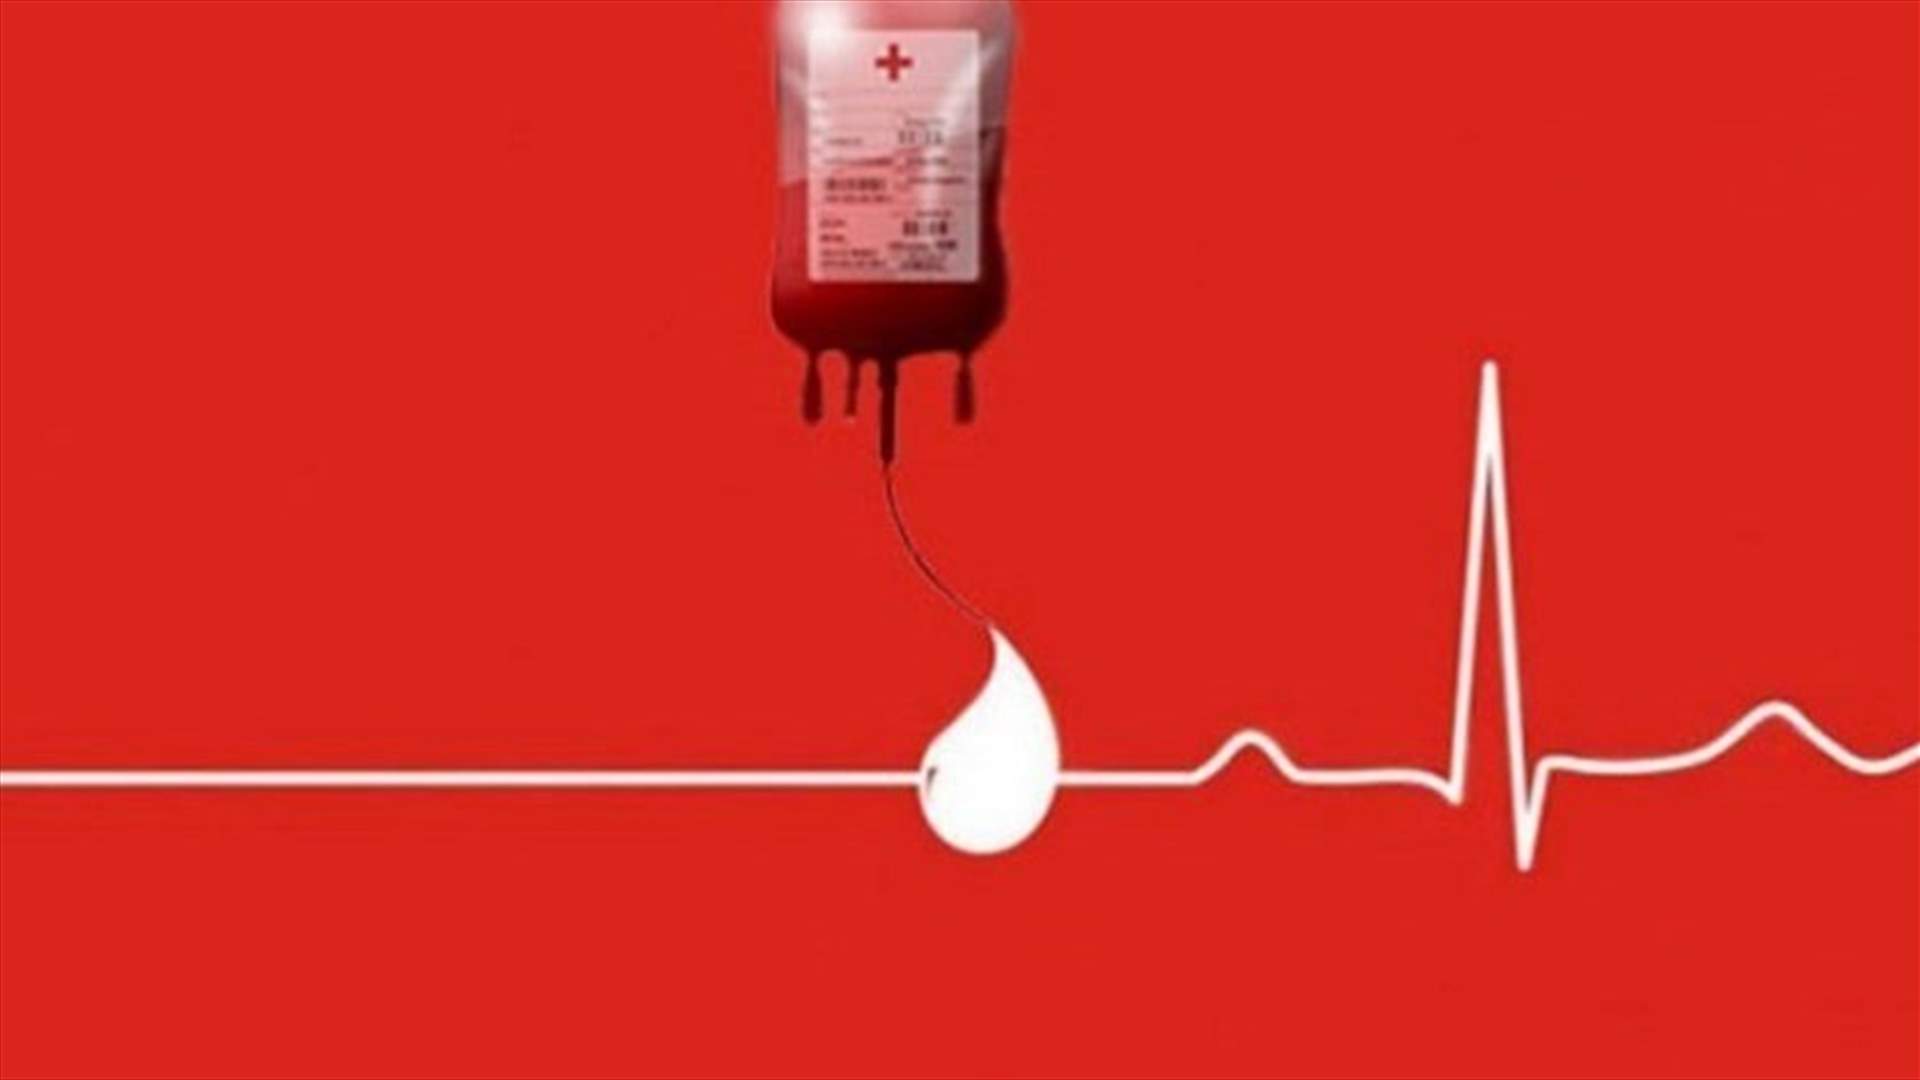 مريض بحاجة الى دم من فئة A+ في مستشفى المعونات في جبيل. للتبرع: 03981151